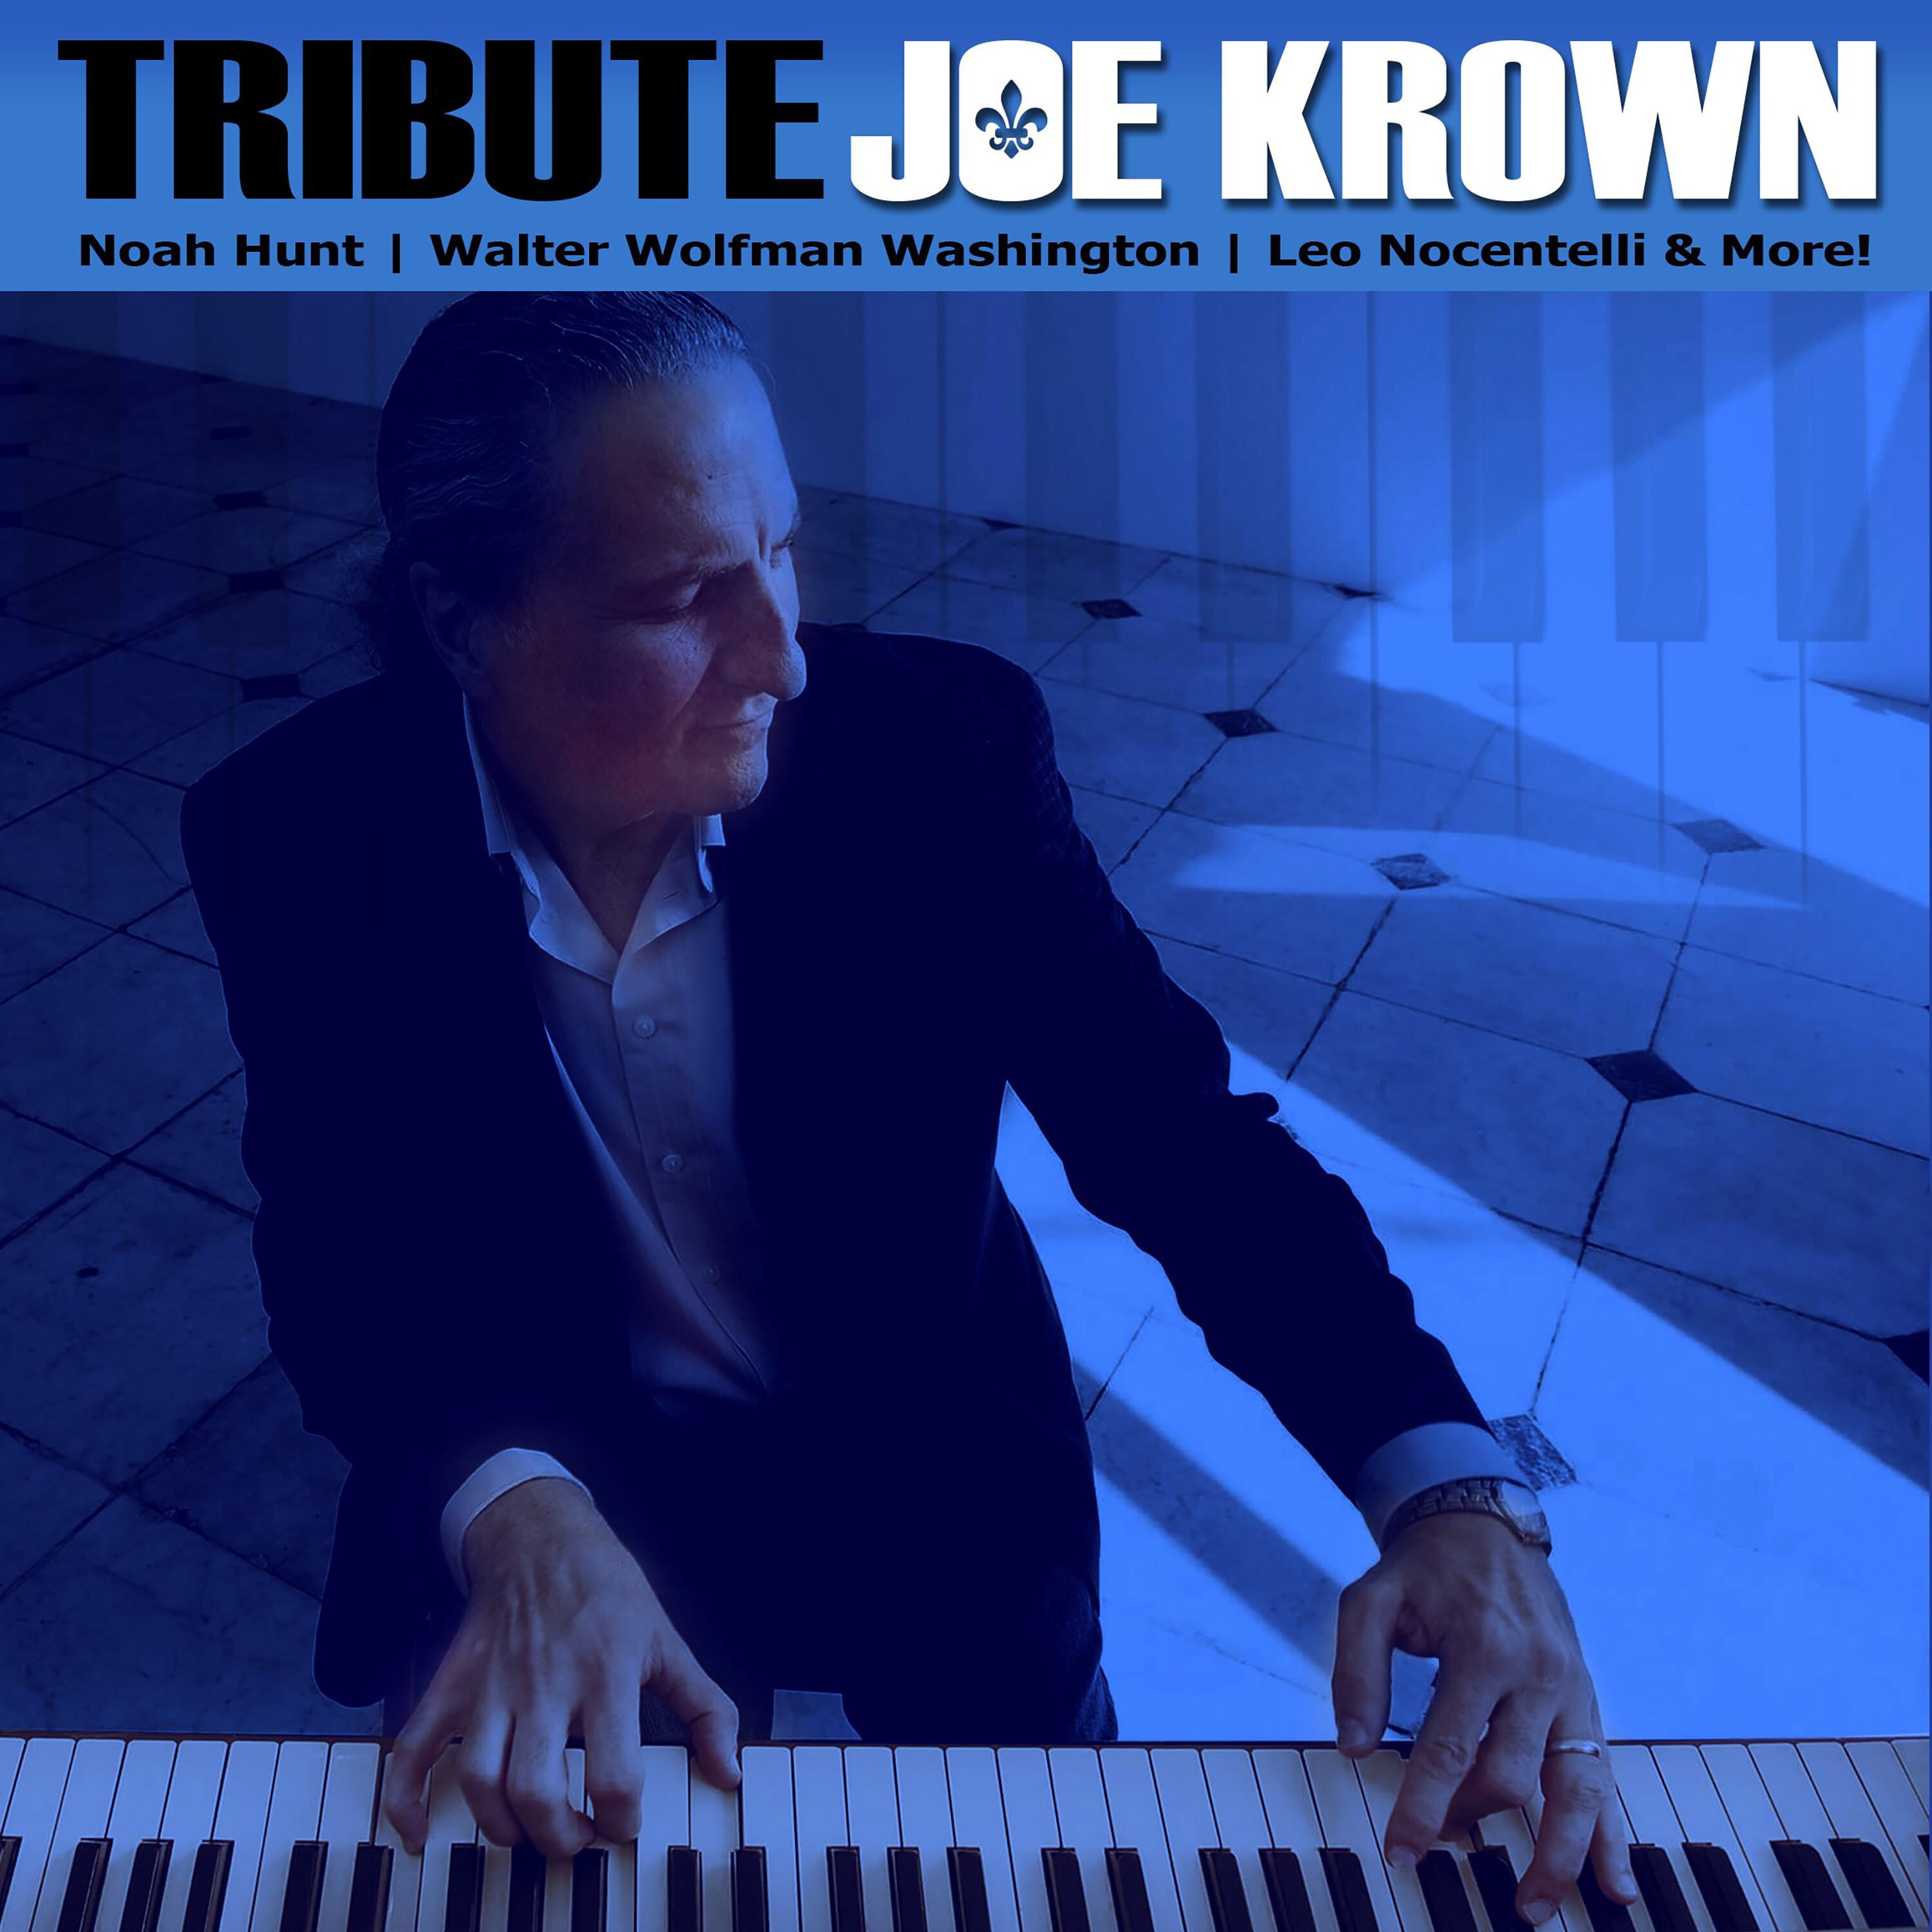 Joe Krown - With You in Mind (feat. Noah Hunt)